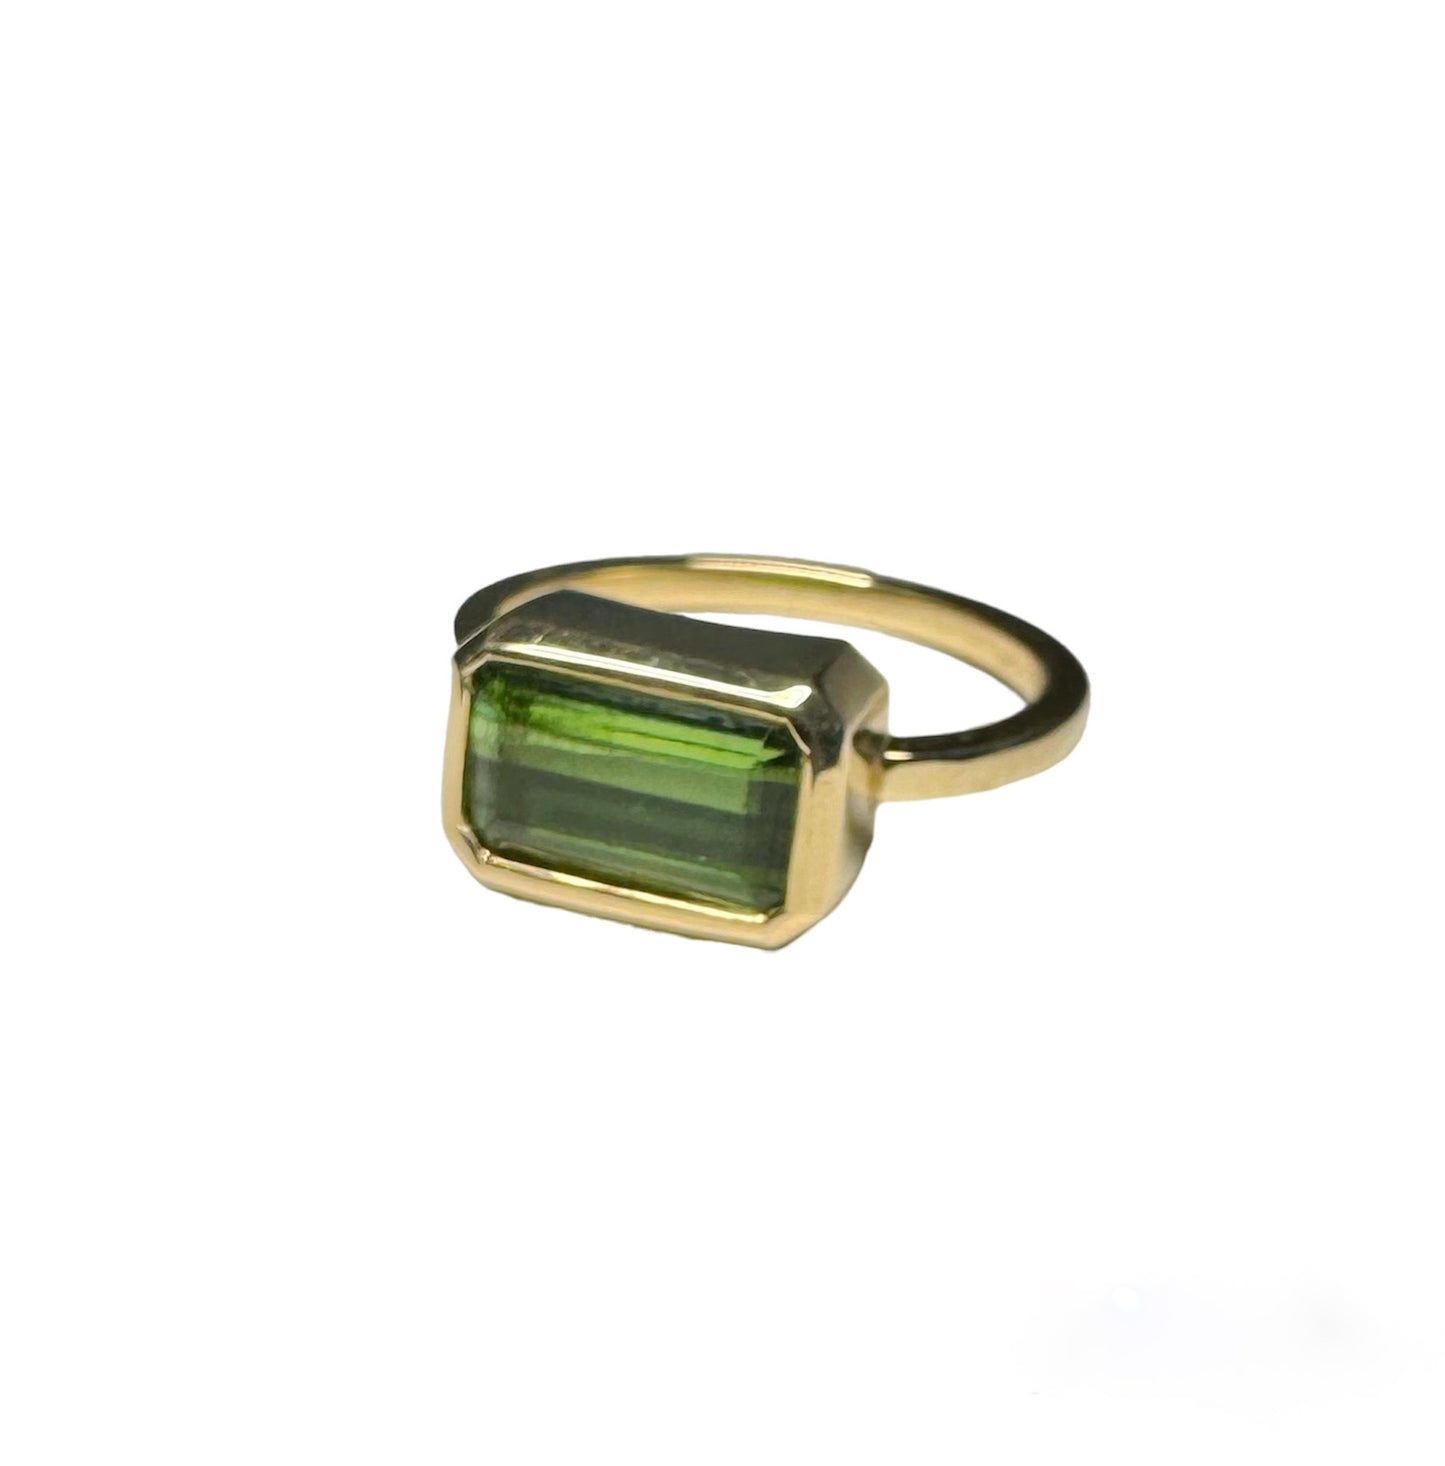 Green Goddess Ring